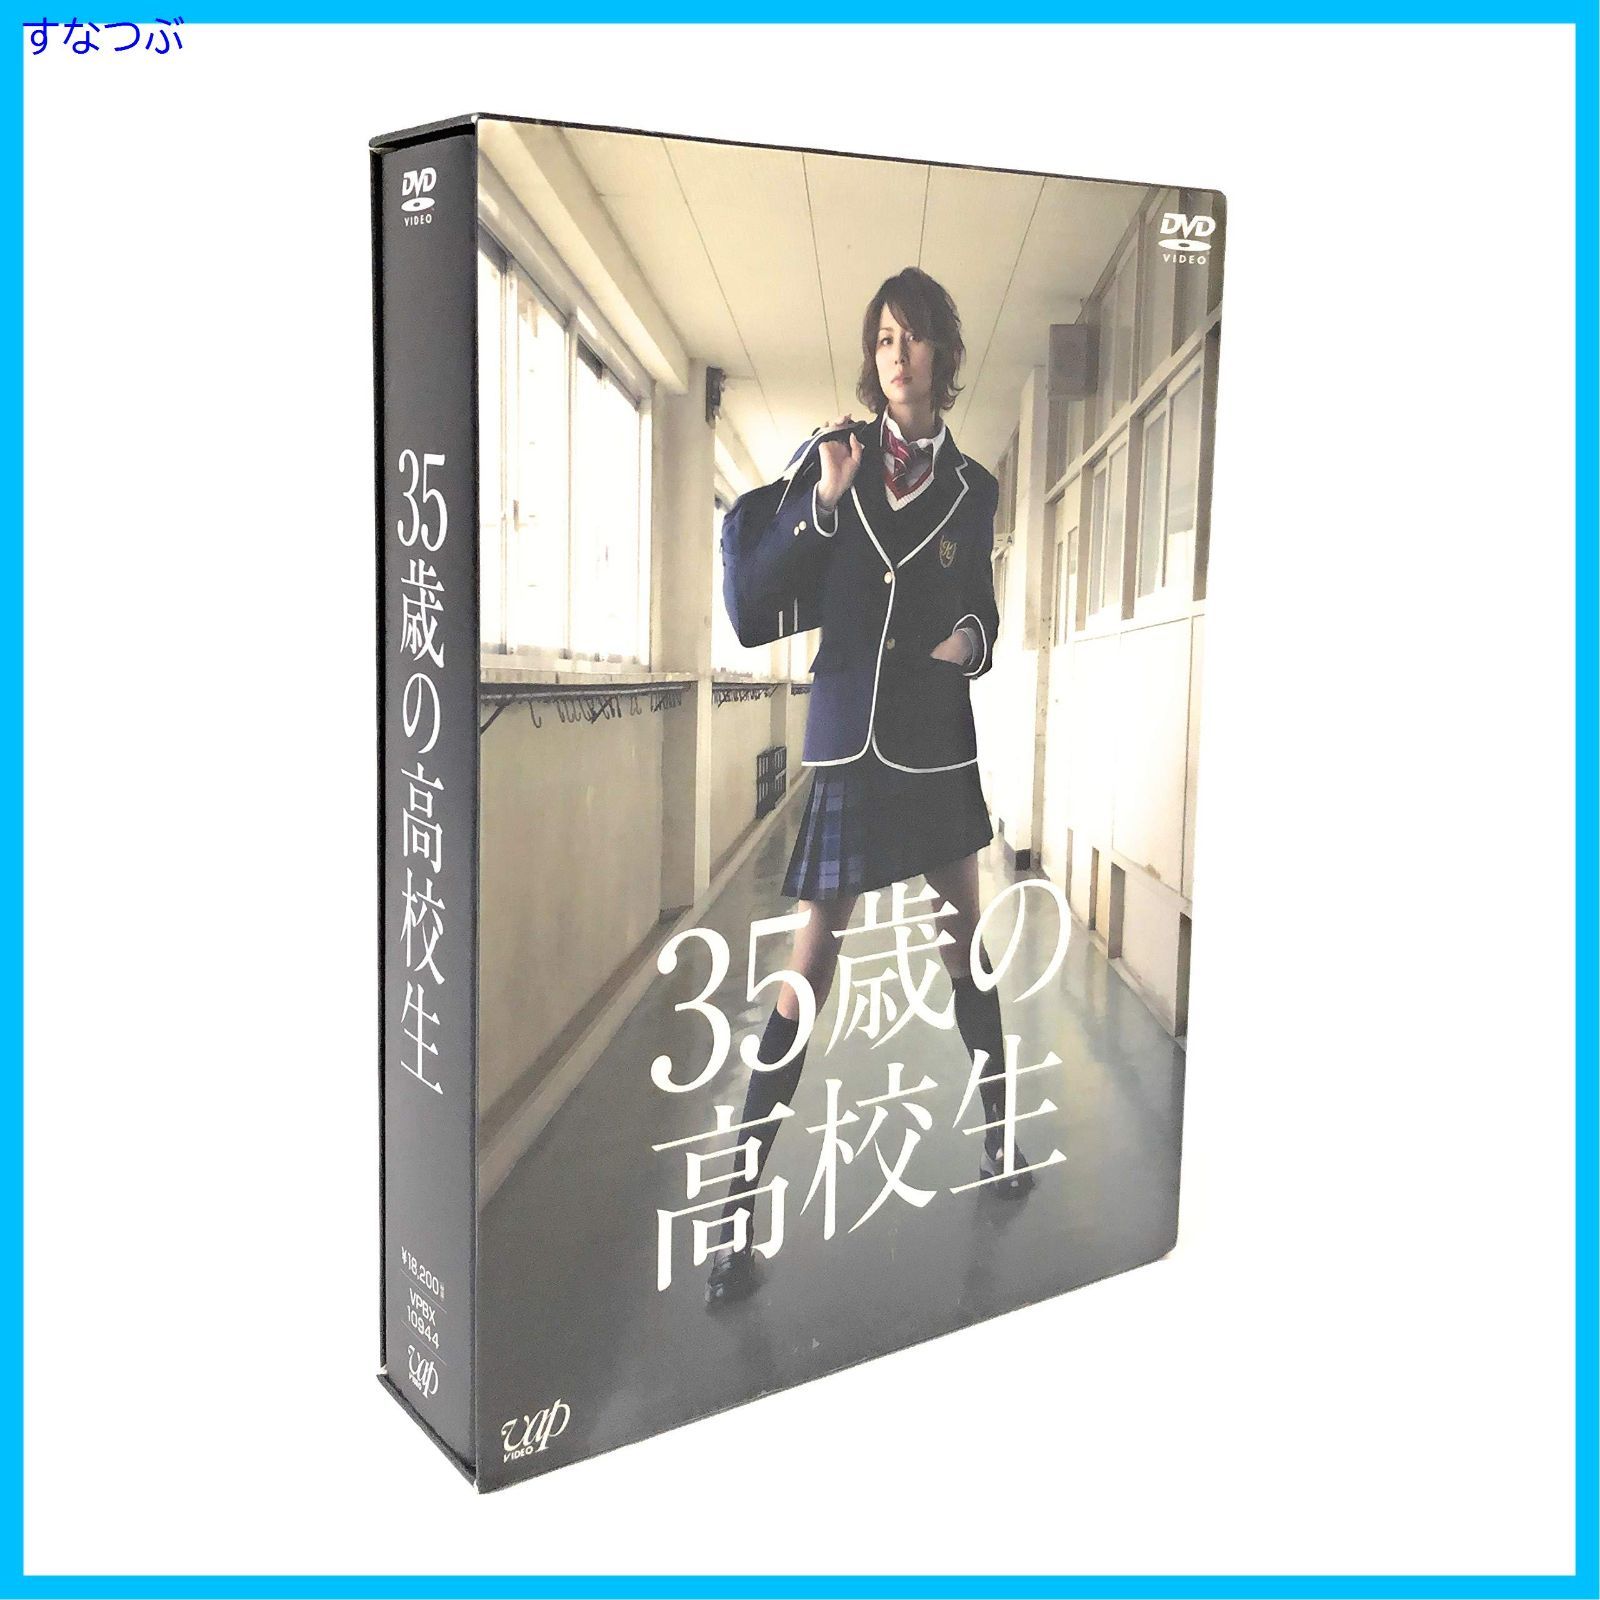 【新品未開封】35歳の高校生 DVD-BOX 米倉涼子 (出演) 溝端淳平 (出演) 形式: DVD